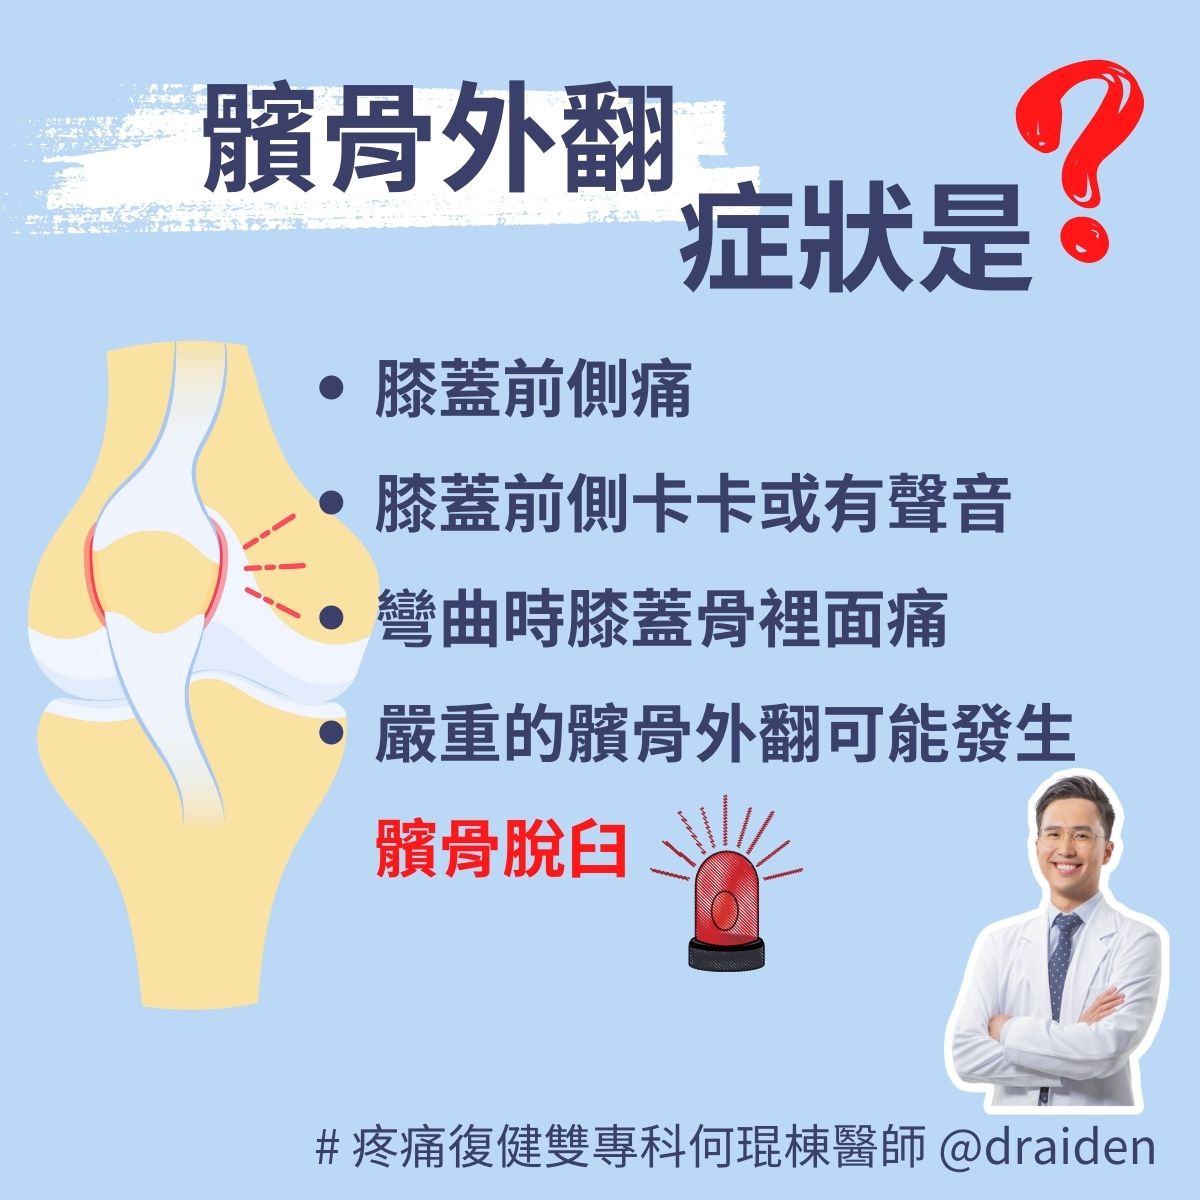 髕骨外翻症狀：膝蓋前側痛、膝蓋前側卡卡、膝蓋彎曲膝蓋骨痛